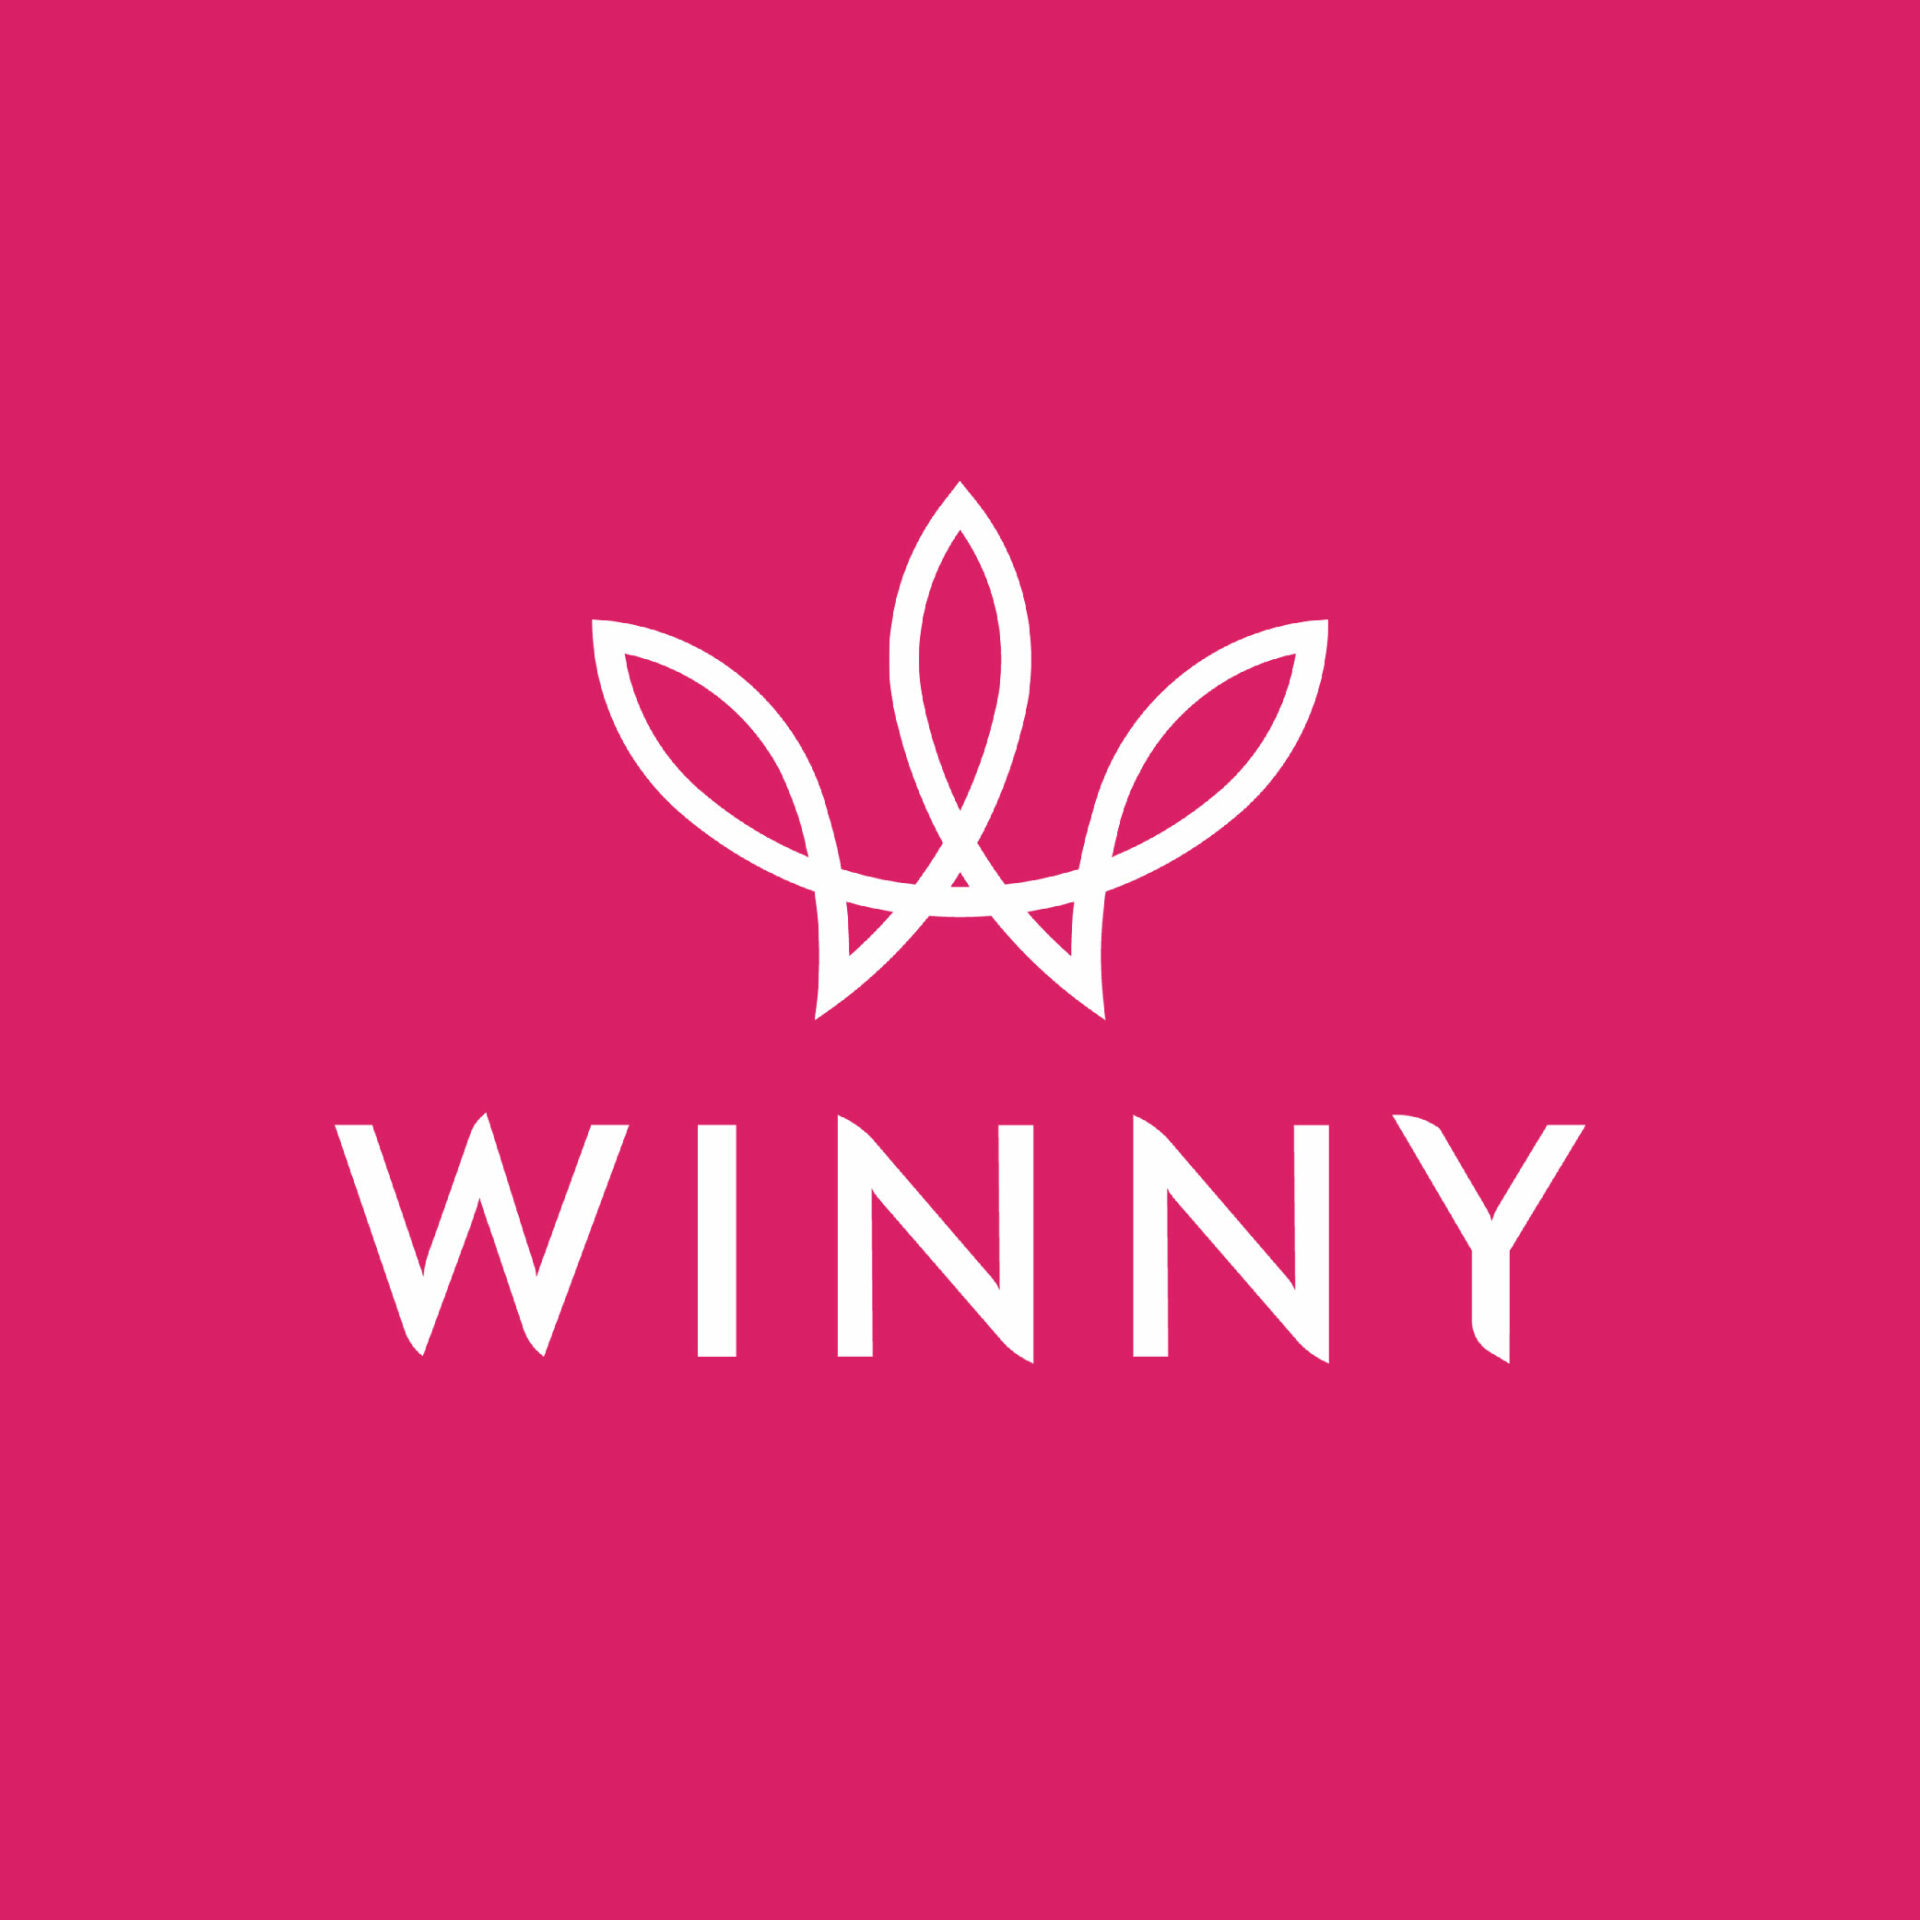 Winny logo 02 scaled